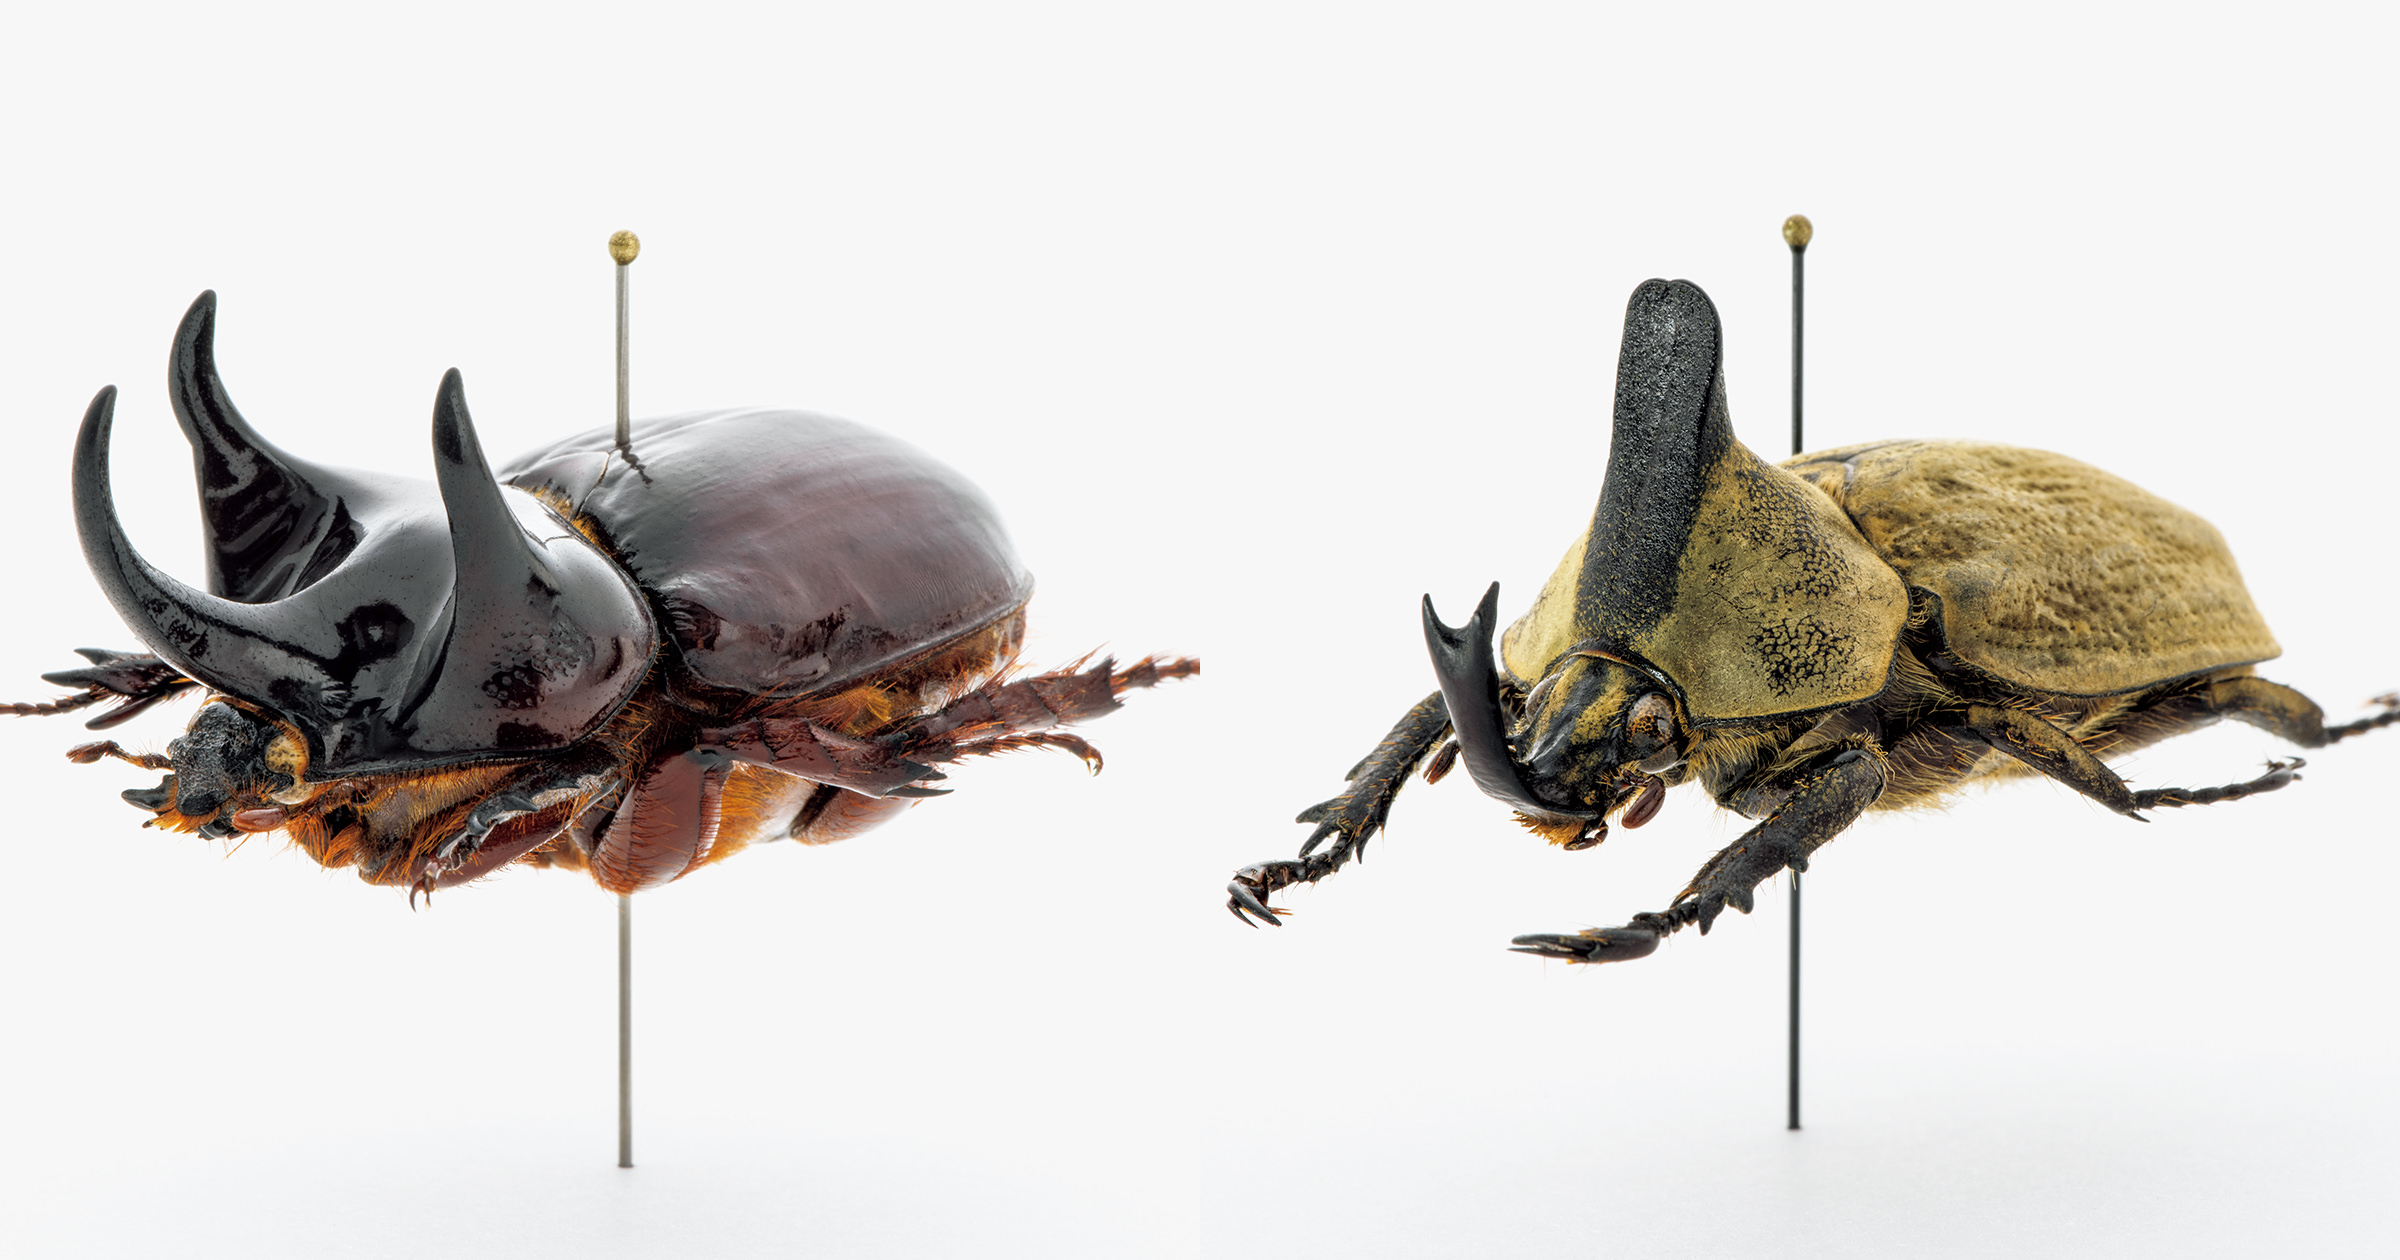 モードな虫図鑑 角のある昆虫の王様からの 珍種選抜 カブトムシ5種類を紹介 ブルータス Brutus Jp